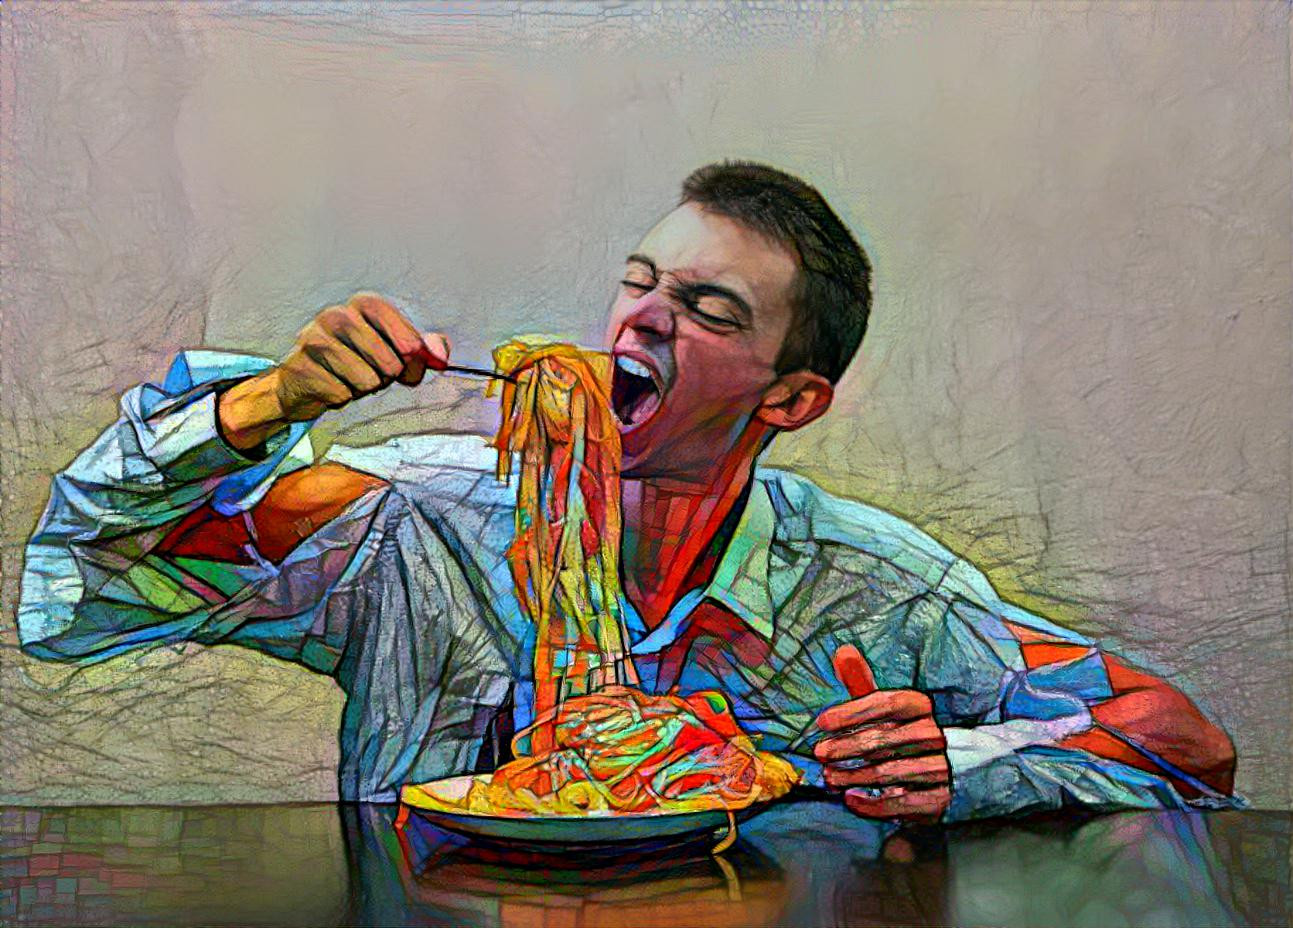 Spaghetti "al dente"